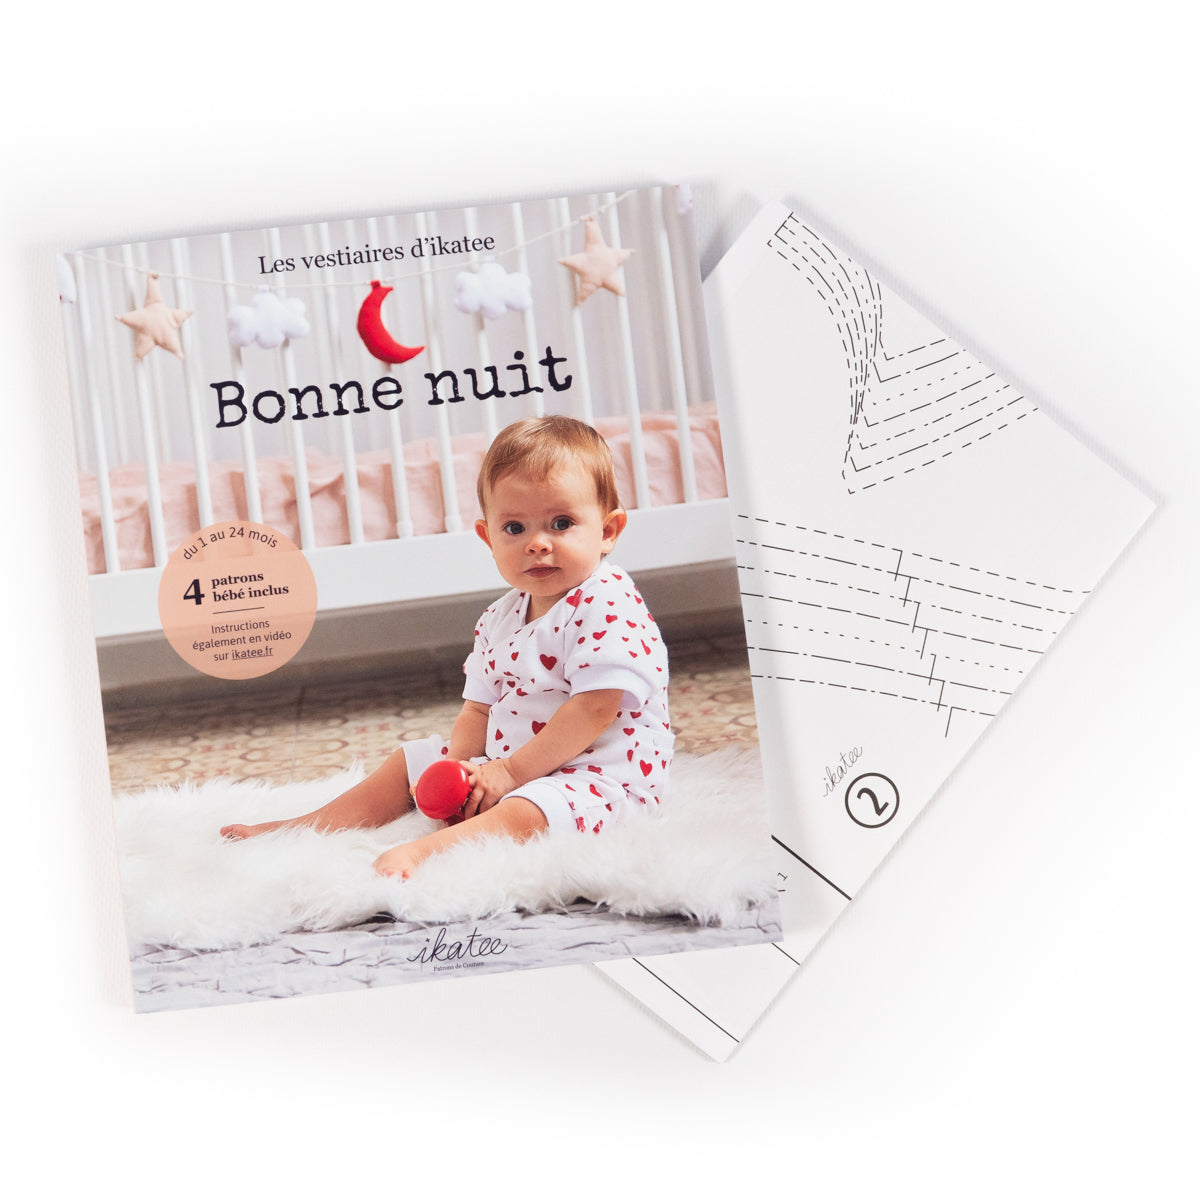 Box kits couture de Noël - Bonnes affaires - Au fil du coupon